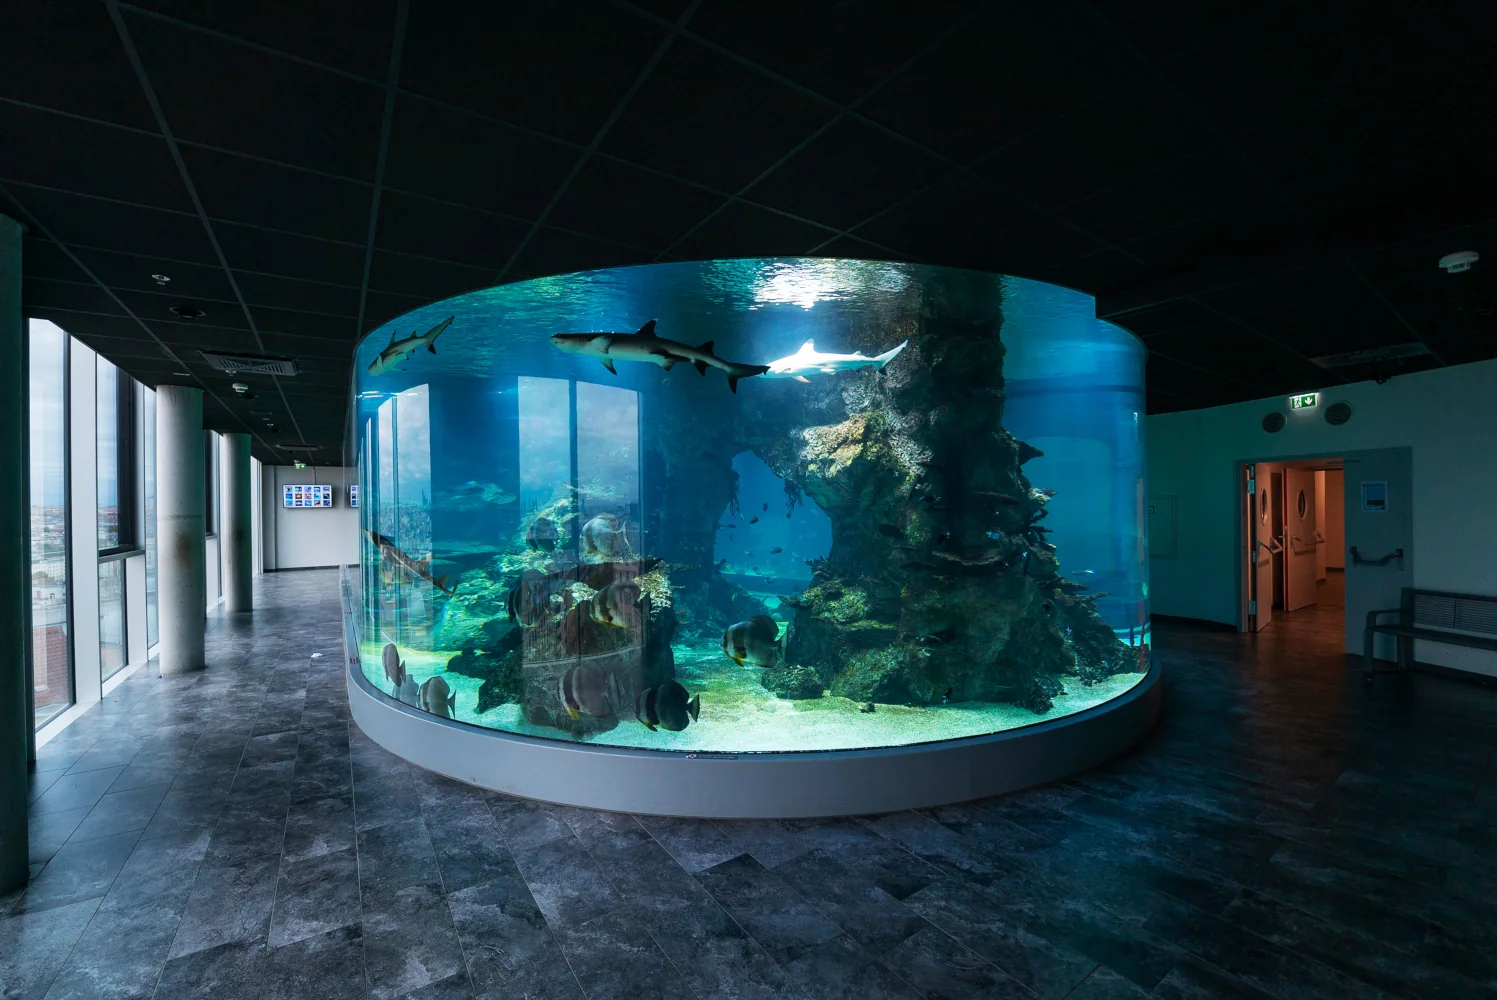 Akwaria namorzynowe, zbiorniki z rekinami i sekcja głębinowa są obecnie ulubionym miejscem dla ponad 14 milionów odwiedzających